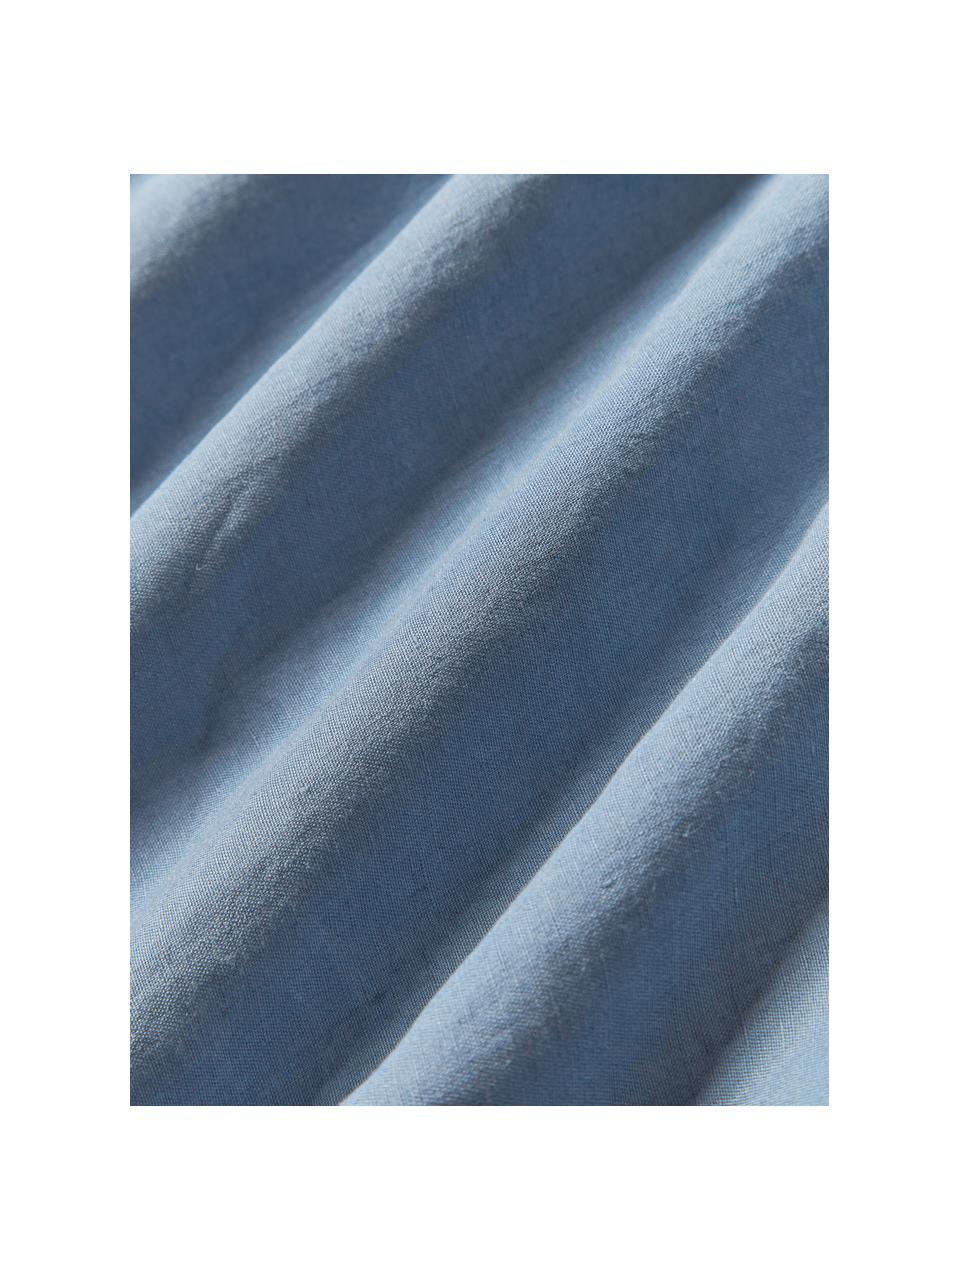 Ľanová obliečka na paplón Airy, 100 % ľan
Hustota vlákna 110 TC, kvalita štandard
Ľan je prírodné vlákno vyznačujúce sa priedušnosťou, odolnosťou a mäkkosťou. Ľan je chladivý a savý materiál, ktorý rýchlo absorbuje a odvádza vlhkosť, vďaka čomu je ideálny do vysokých teplôt.

Materiál použitý v tomto výrobku bol testovaný na škodlivé látky a certifikovaný podľa STANDARD 100 od OEKO-TEX®, 15.HIN.65948, HOHENSTEIN HTTI., Modrá, Š 200 x D 200 cm